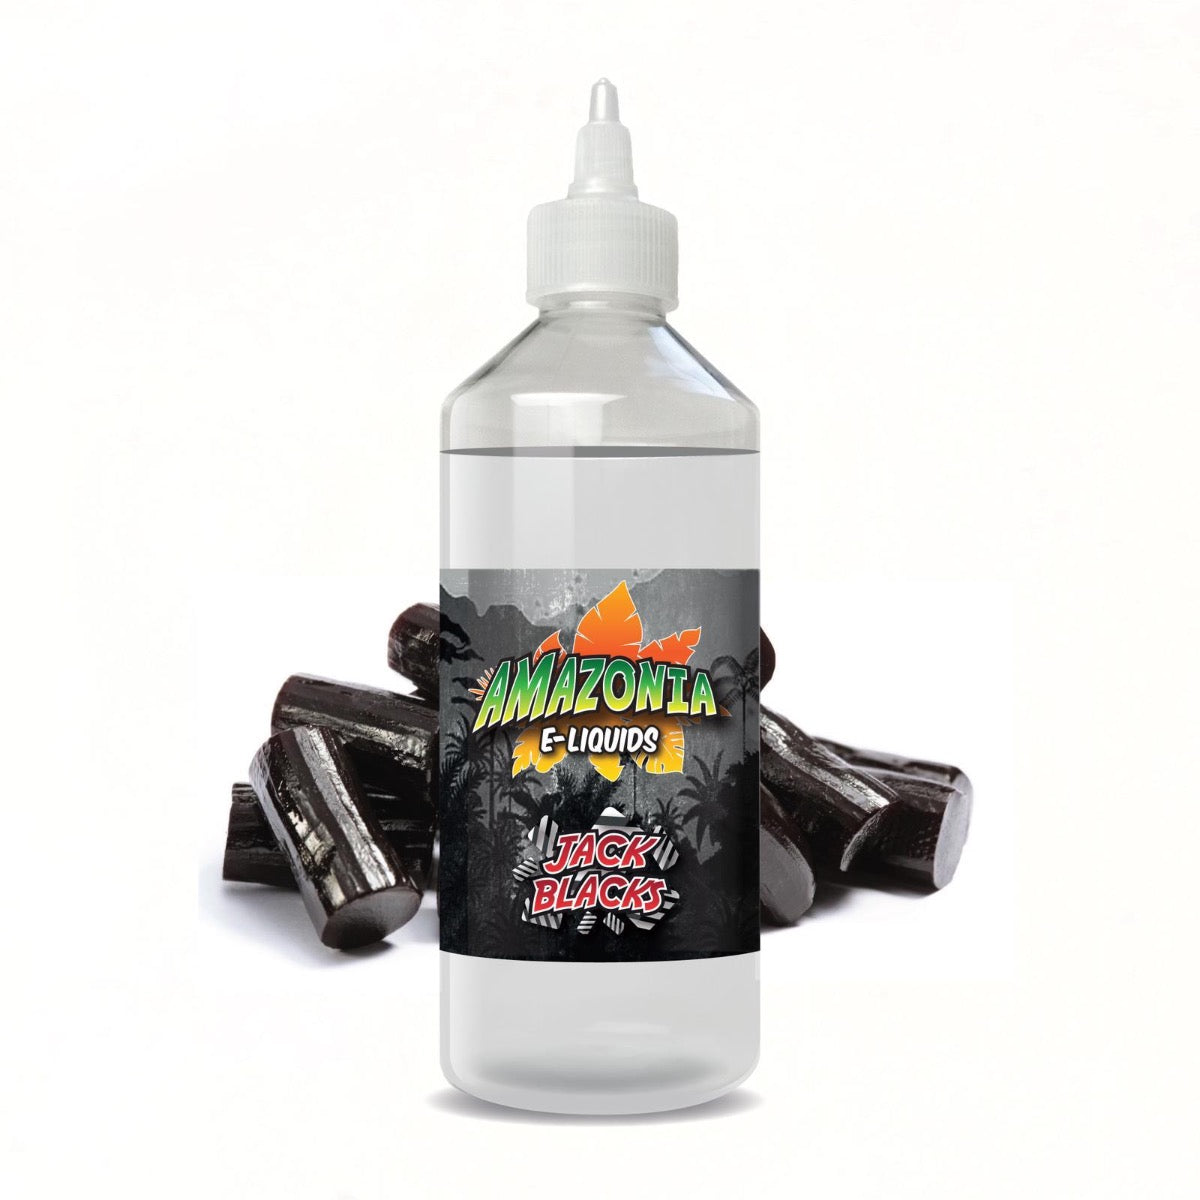 Jack Blacks by Amazonia E-Liquids | 500ml Shortfill